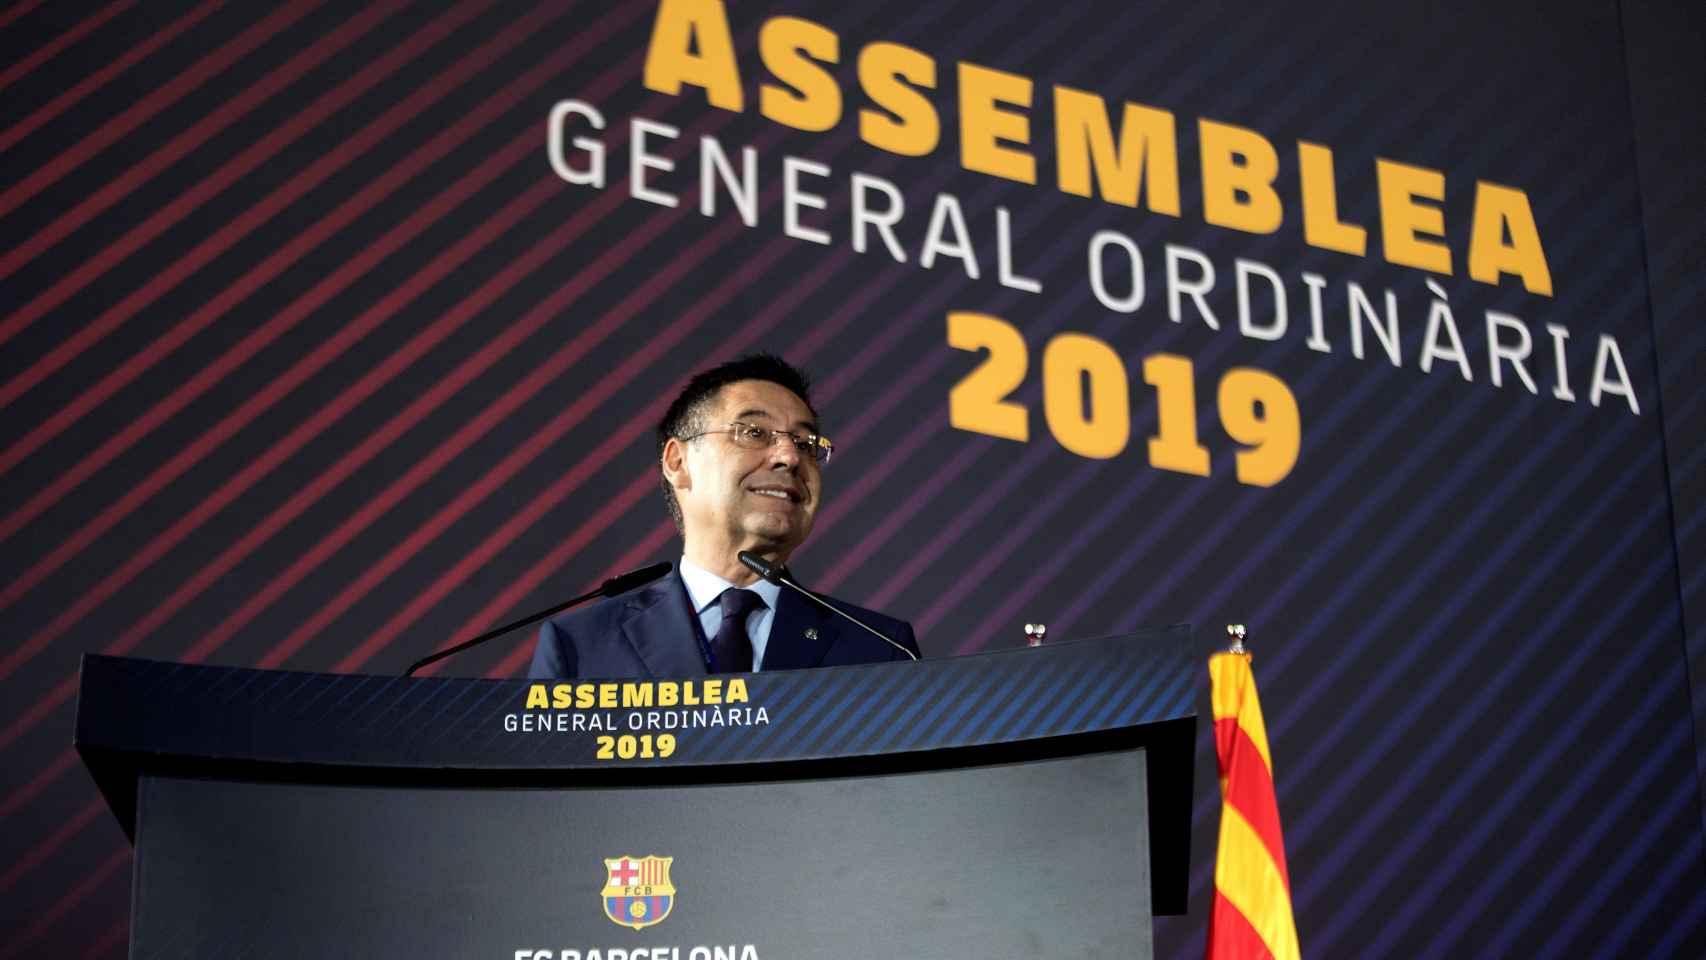 Bartomeu en la Asamblea de Socios del Barça 2019.